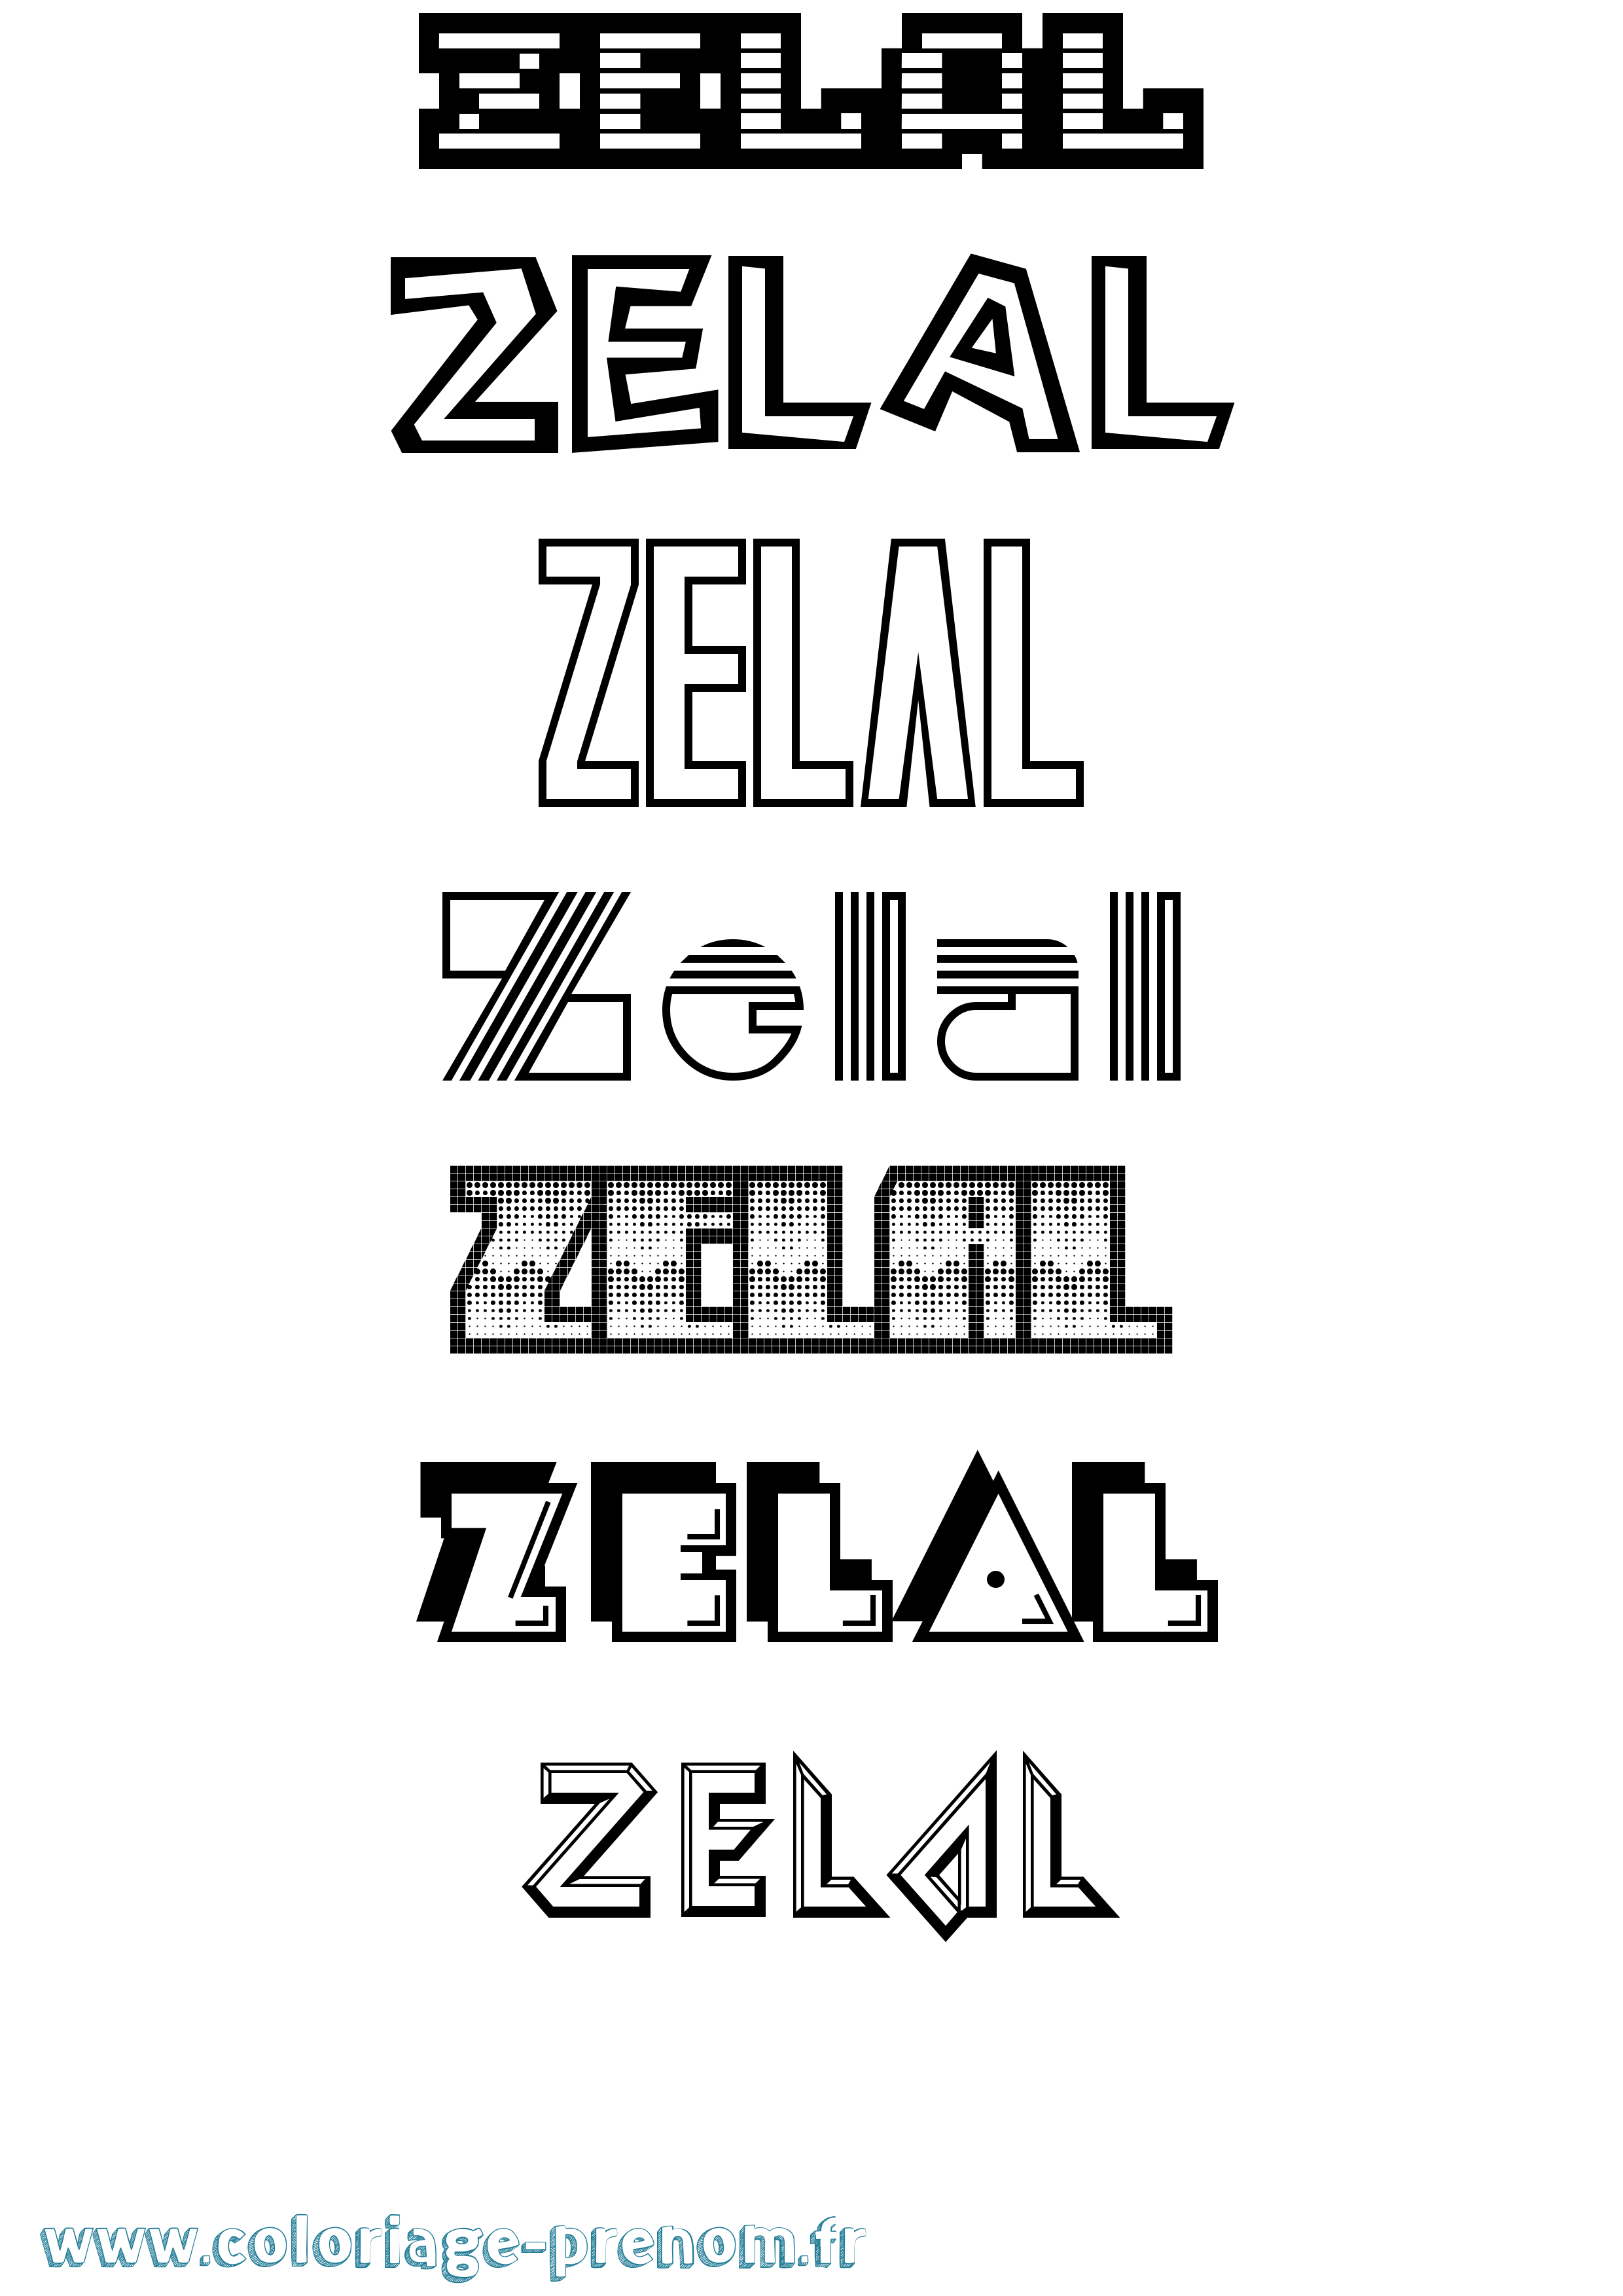 Coloriage prénom Zelal Jeux Vidéos